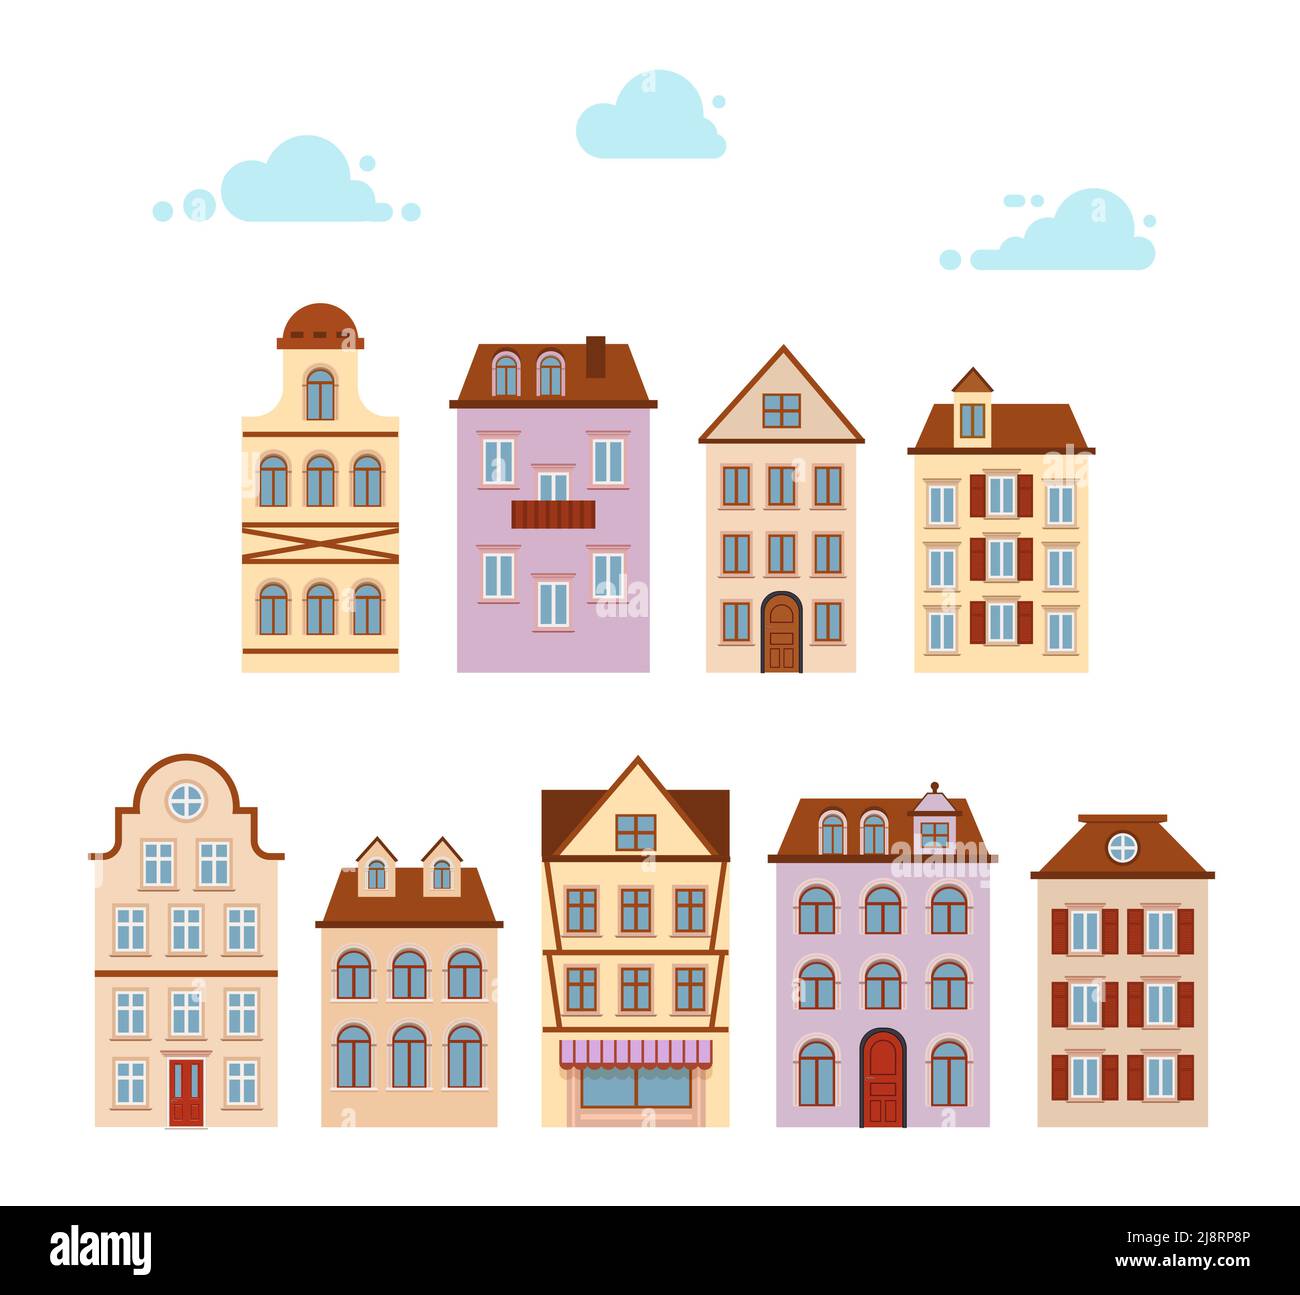 Icône définir les maisons. Vieille ville européenne de rue. Paysage urbain. Dessin animé maison rétro. Illustration de Vecteur